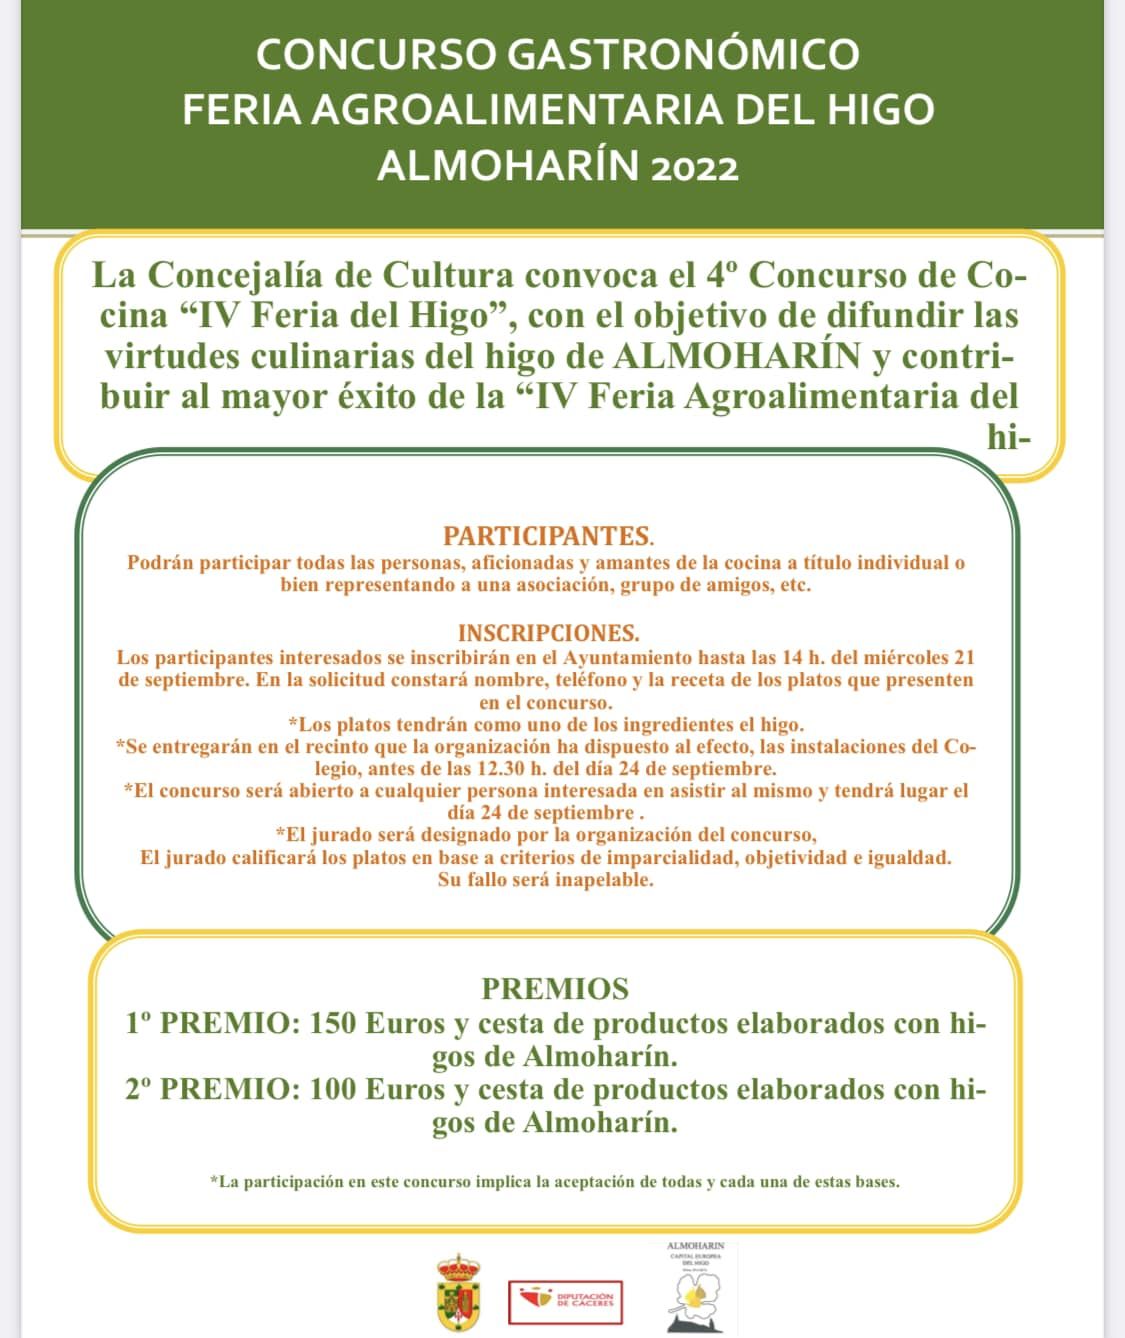 Cartel del Concurso Gastronómico de la Feria Agroalimentaria del Higo.